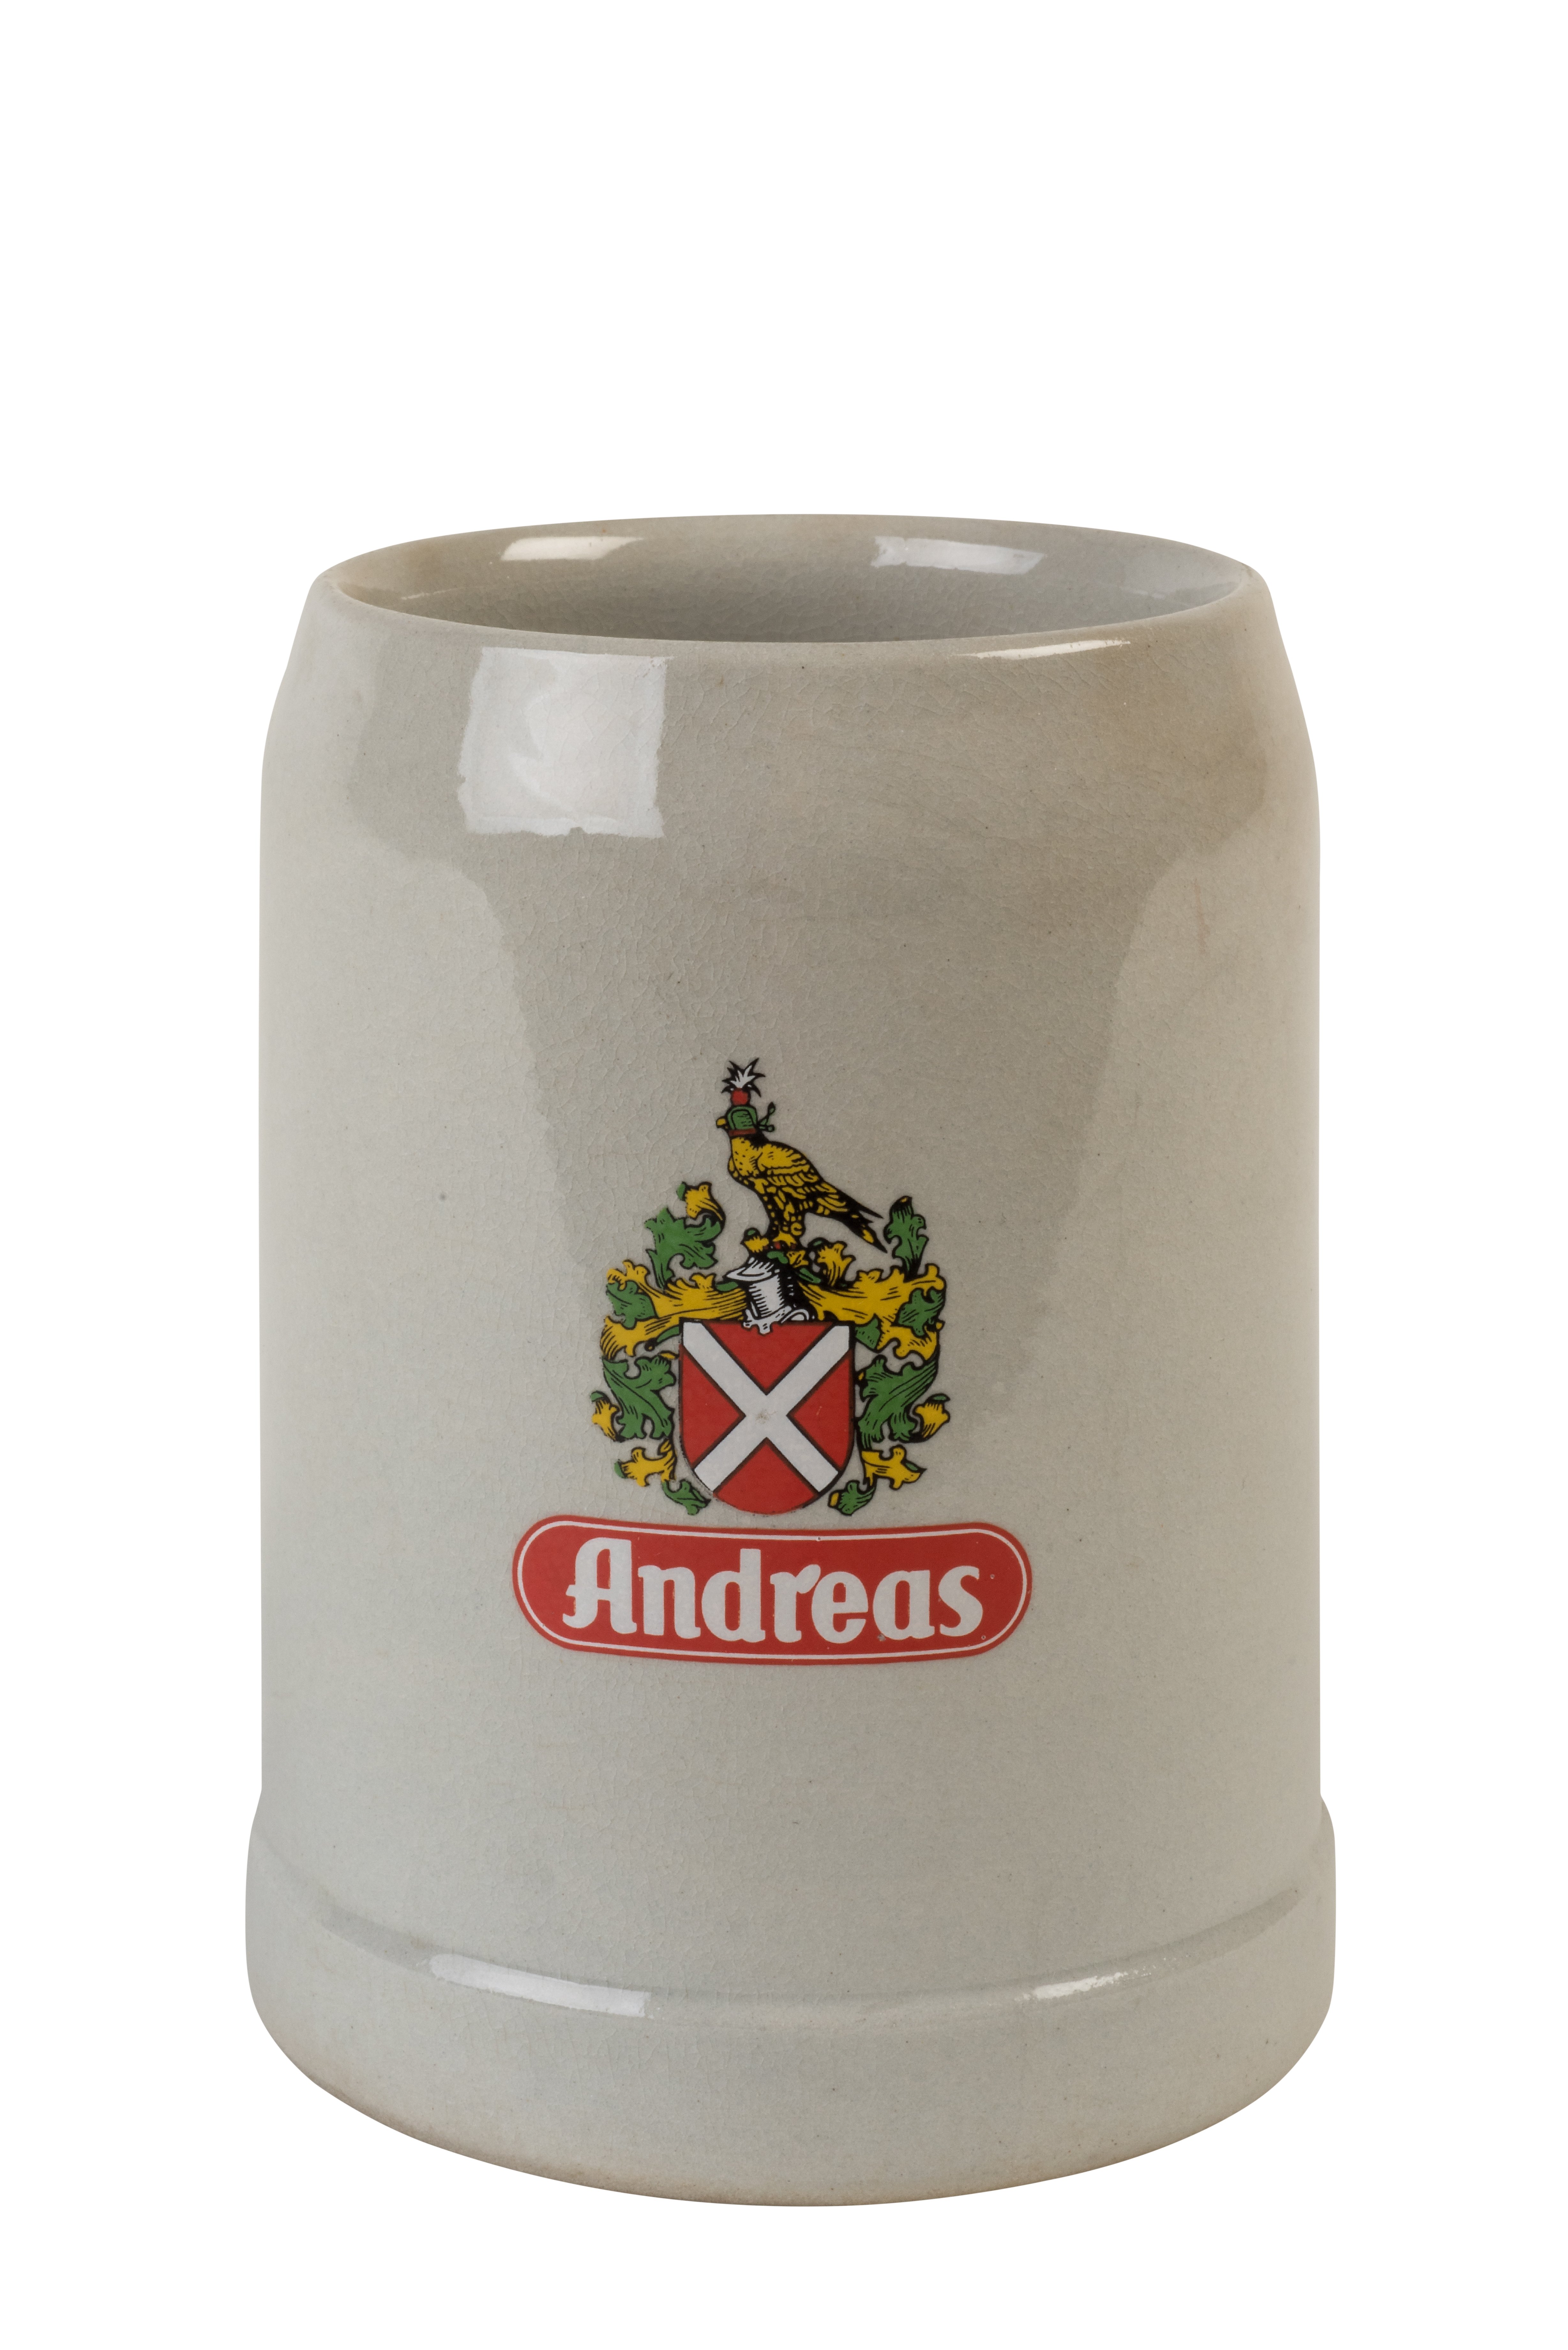 Bierkrug der Andreas-Brauerei (LWL-Freilichtmuseum Hagen CC BY-NC-SA)